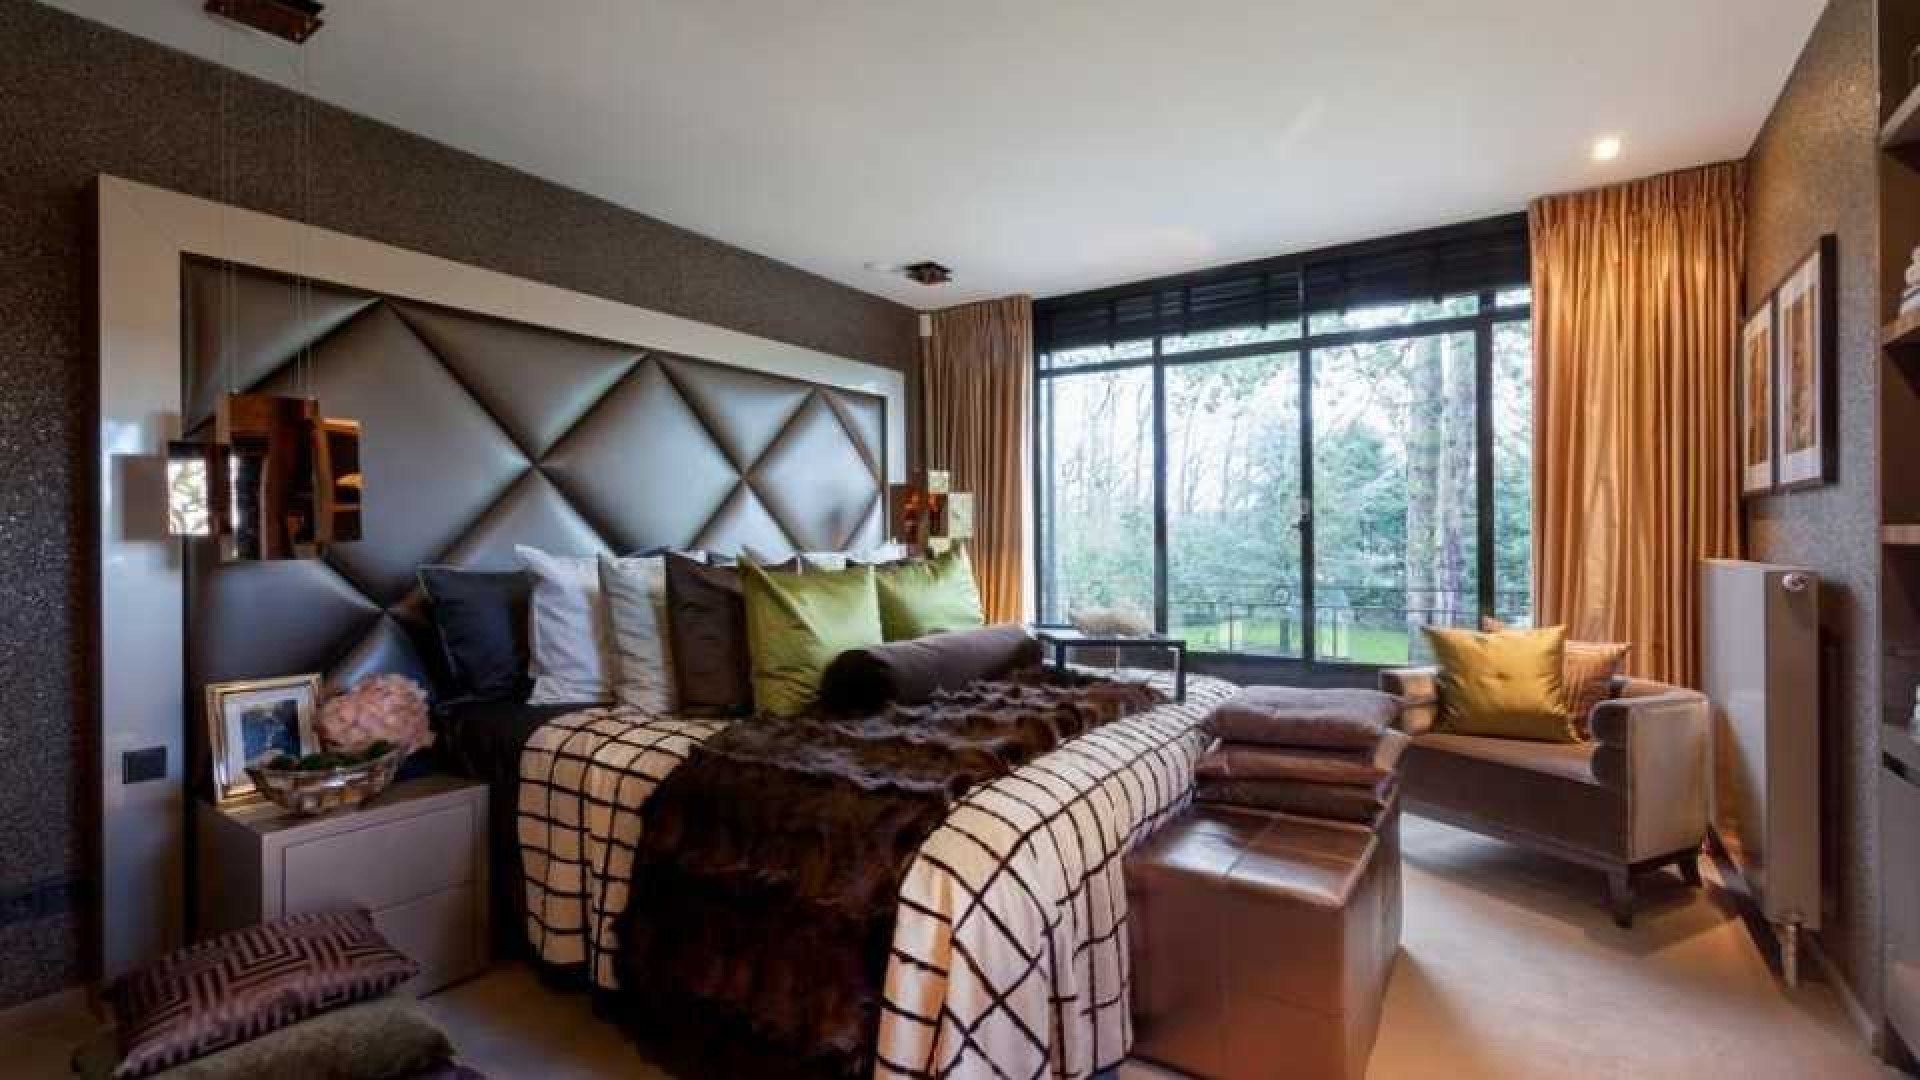 Top interieur stylist Eric Kuster zet zijn eigen droomvilla te koop. Zie foto's 26